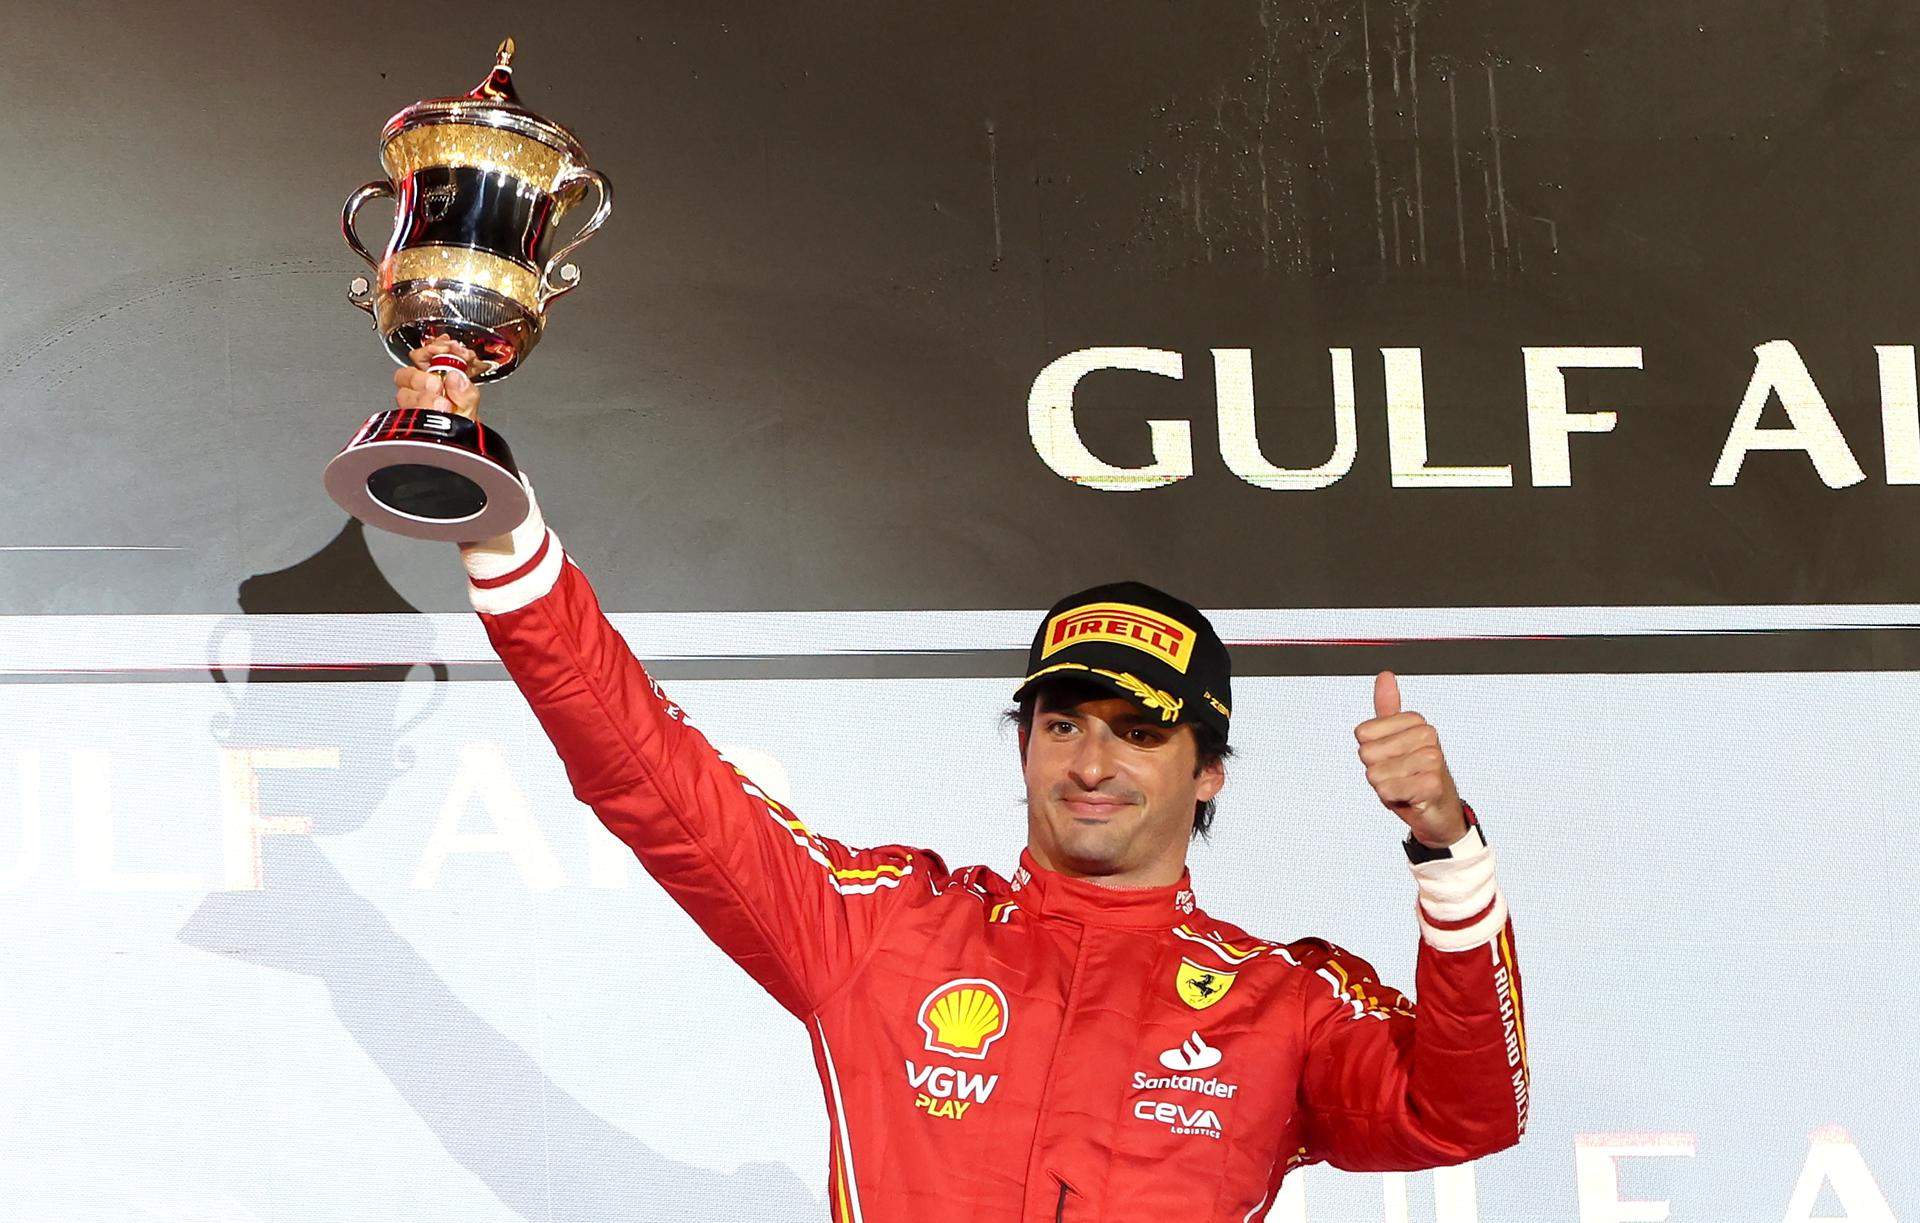 Xec en blanc a Carlos Sainz per ser el líder de l'equip després de Ferrari